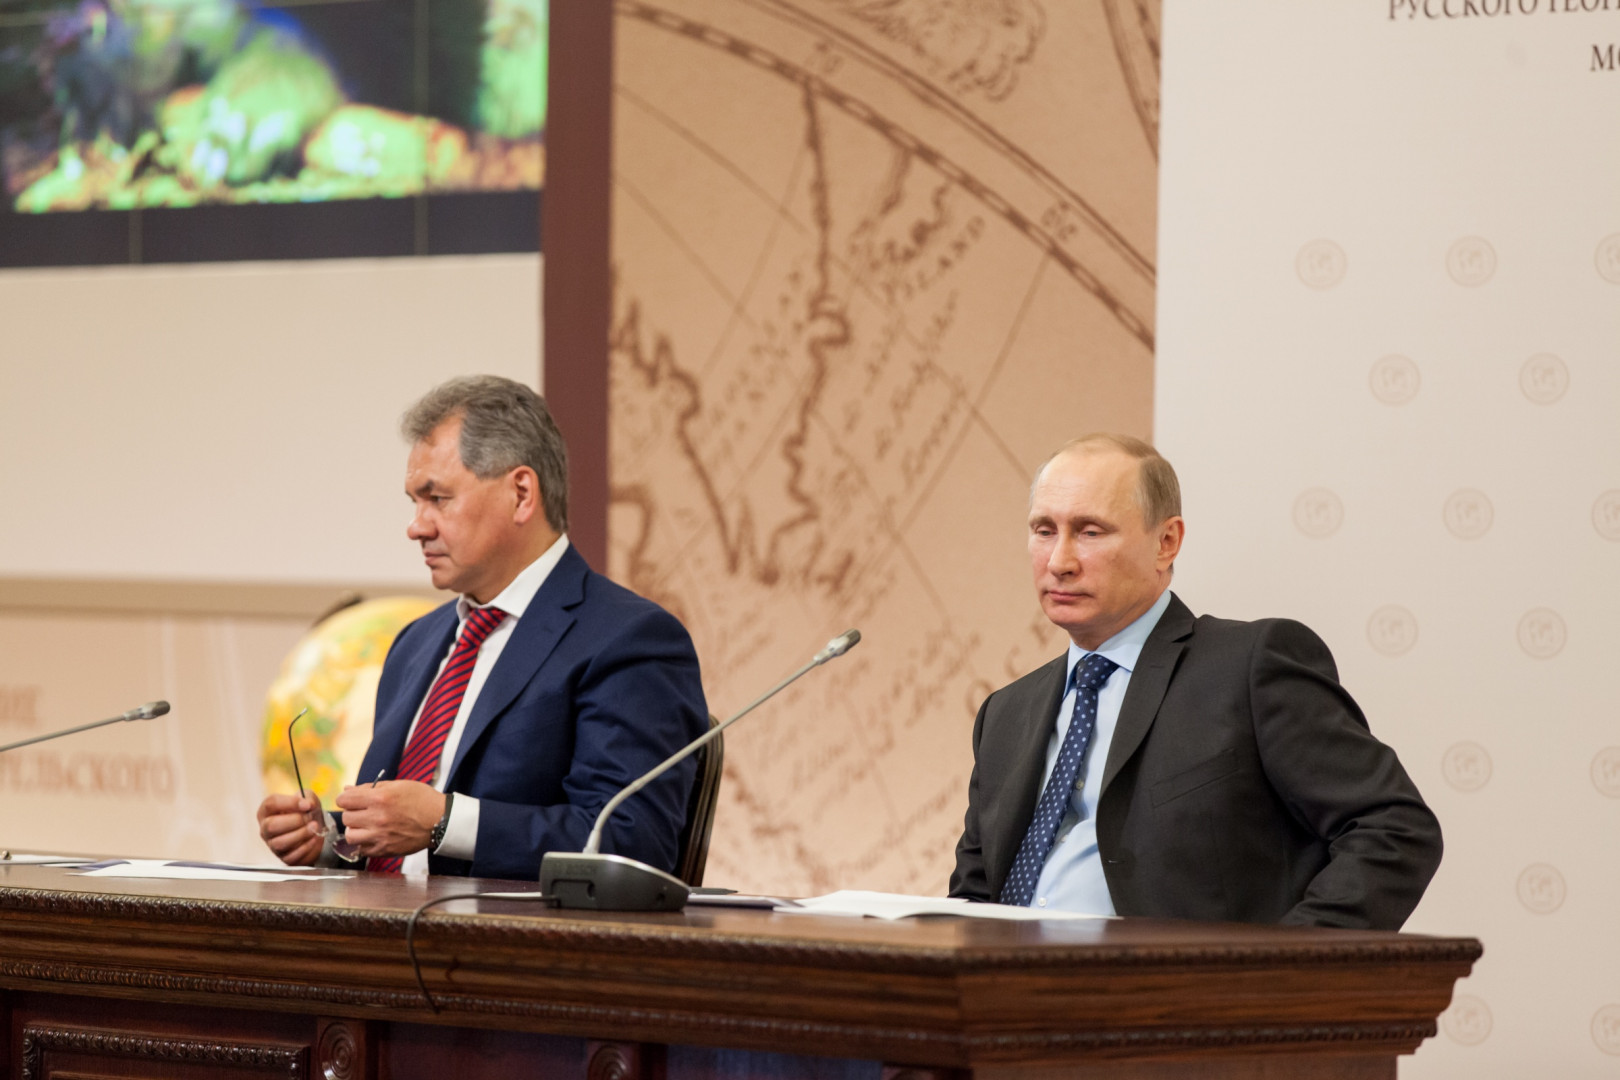 Заседание Попечительского Совета Русского географического общества (15 апреля 2014 года)